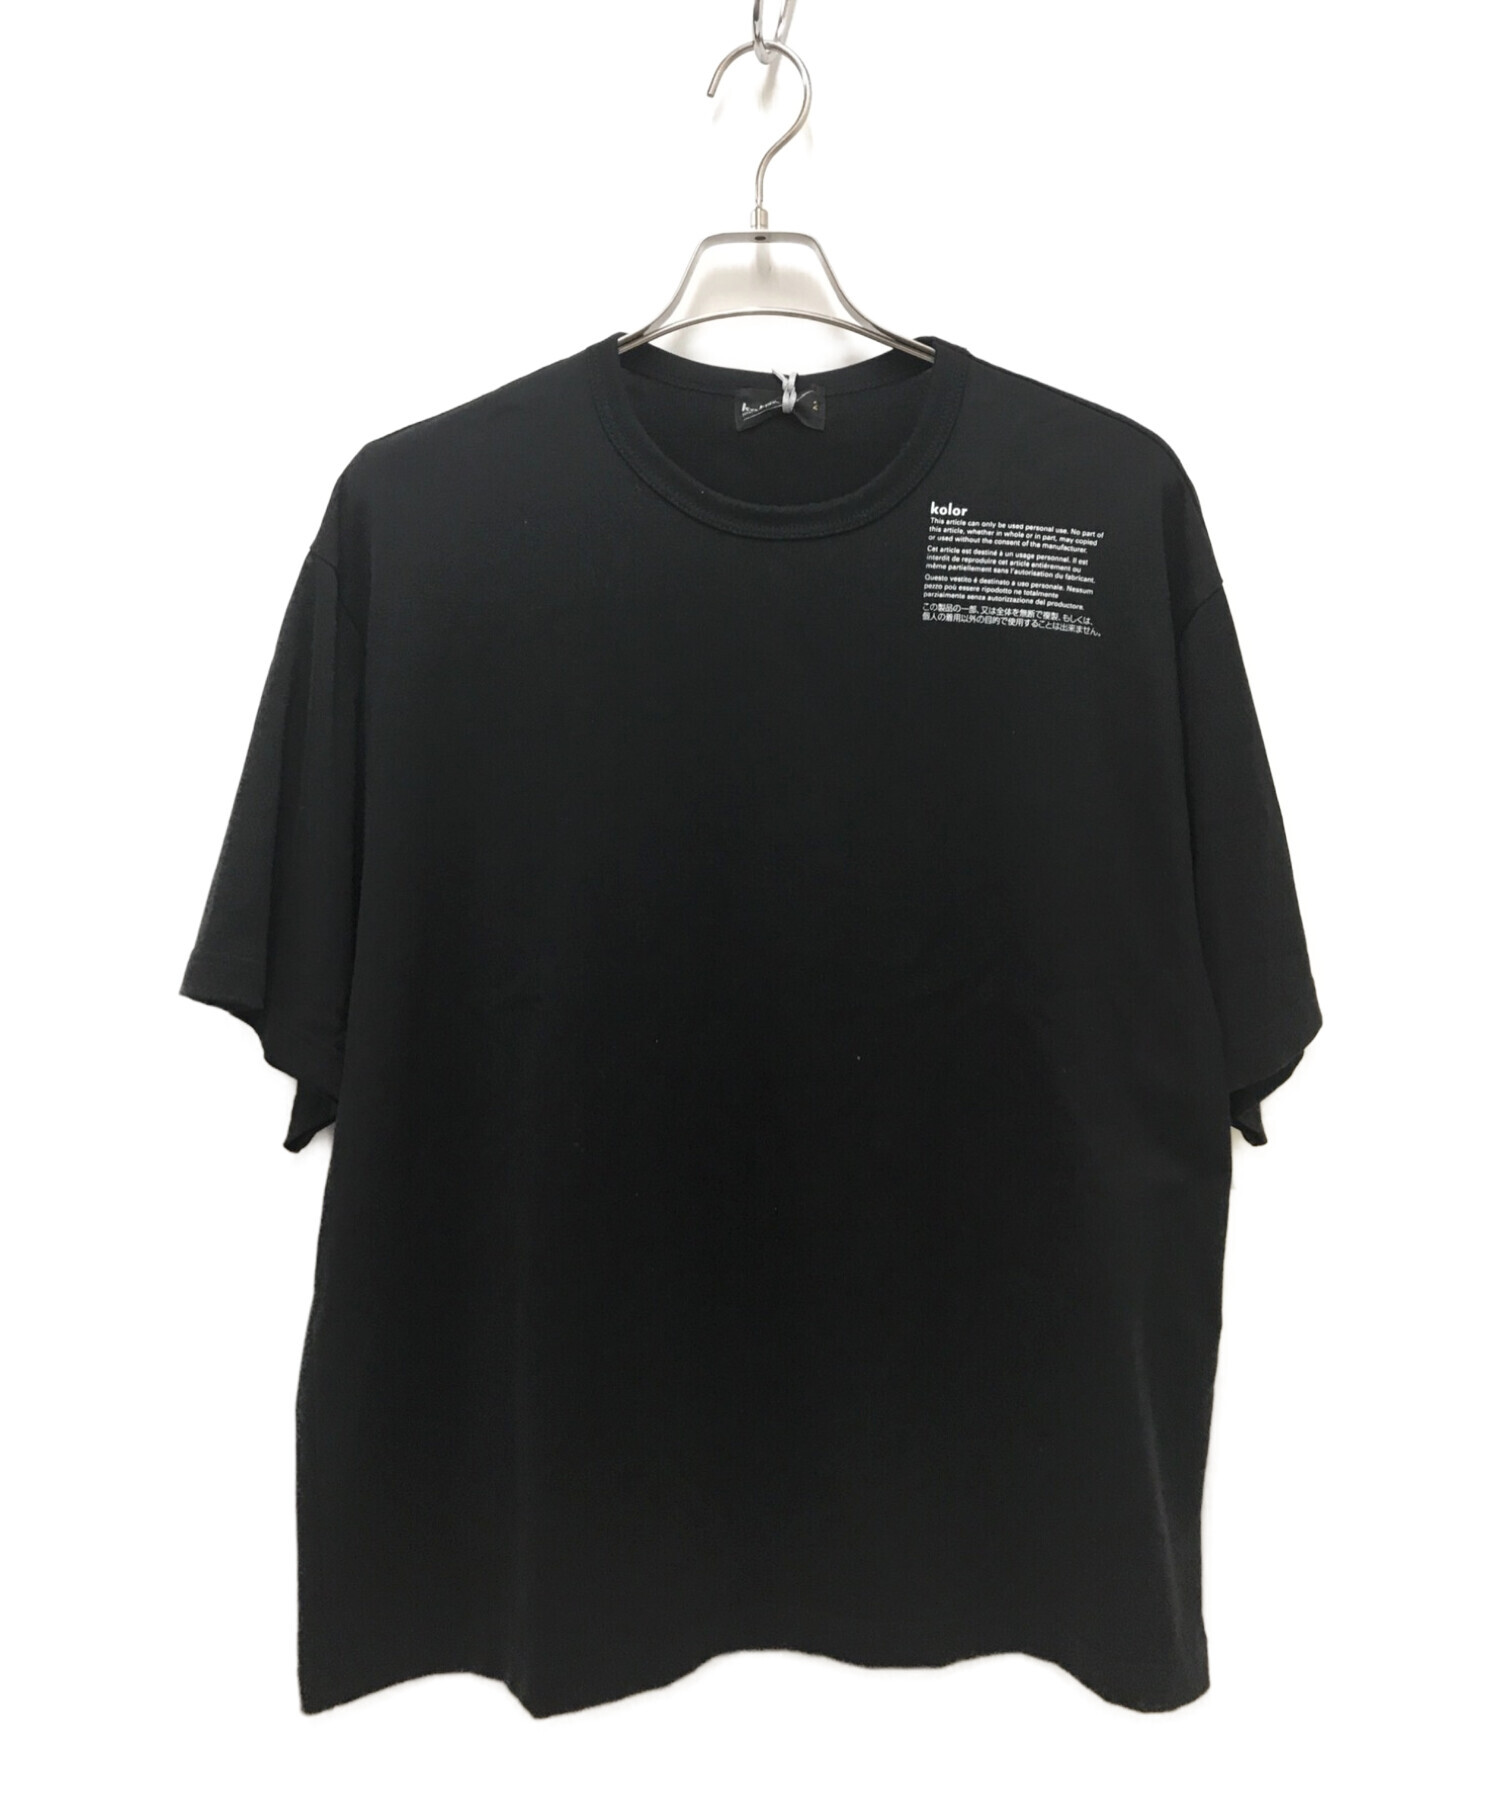 注目の kolor 22ss ドッキング Tシャツ | artfive.co.jp